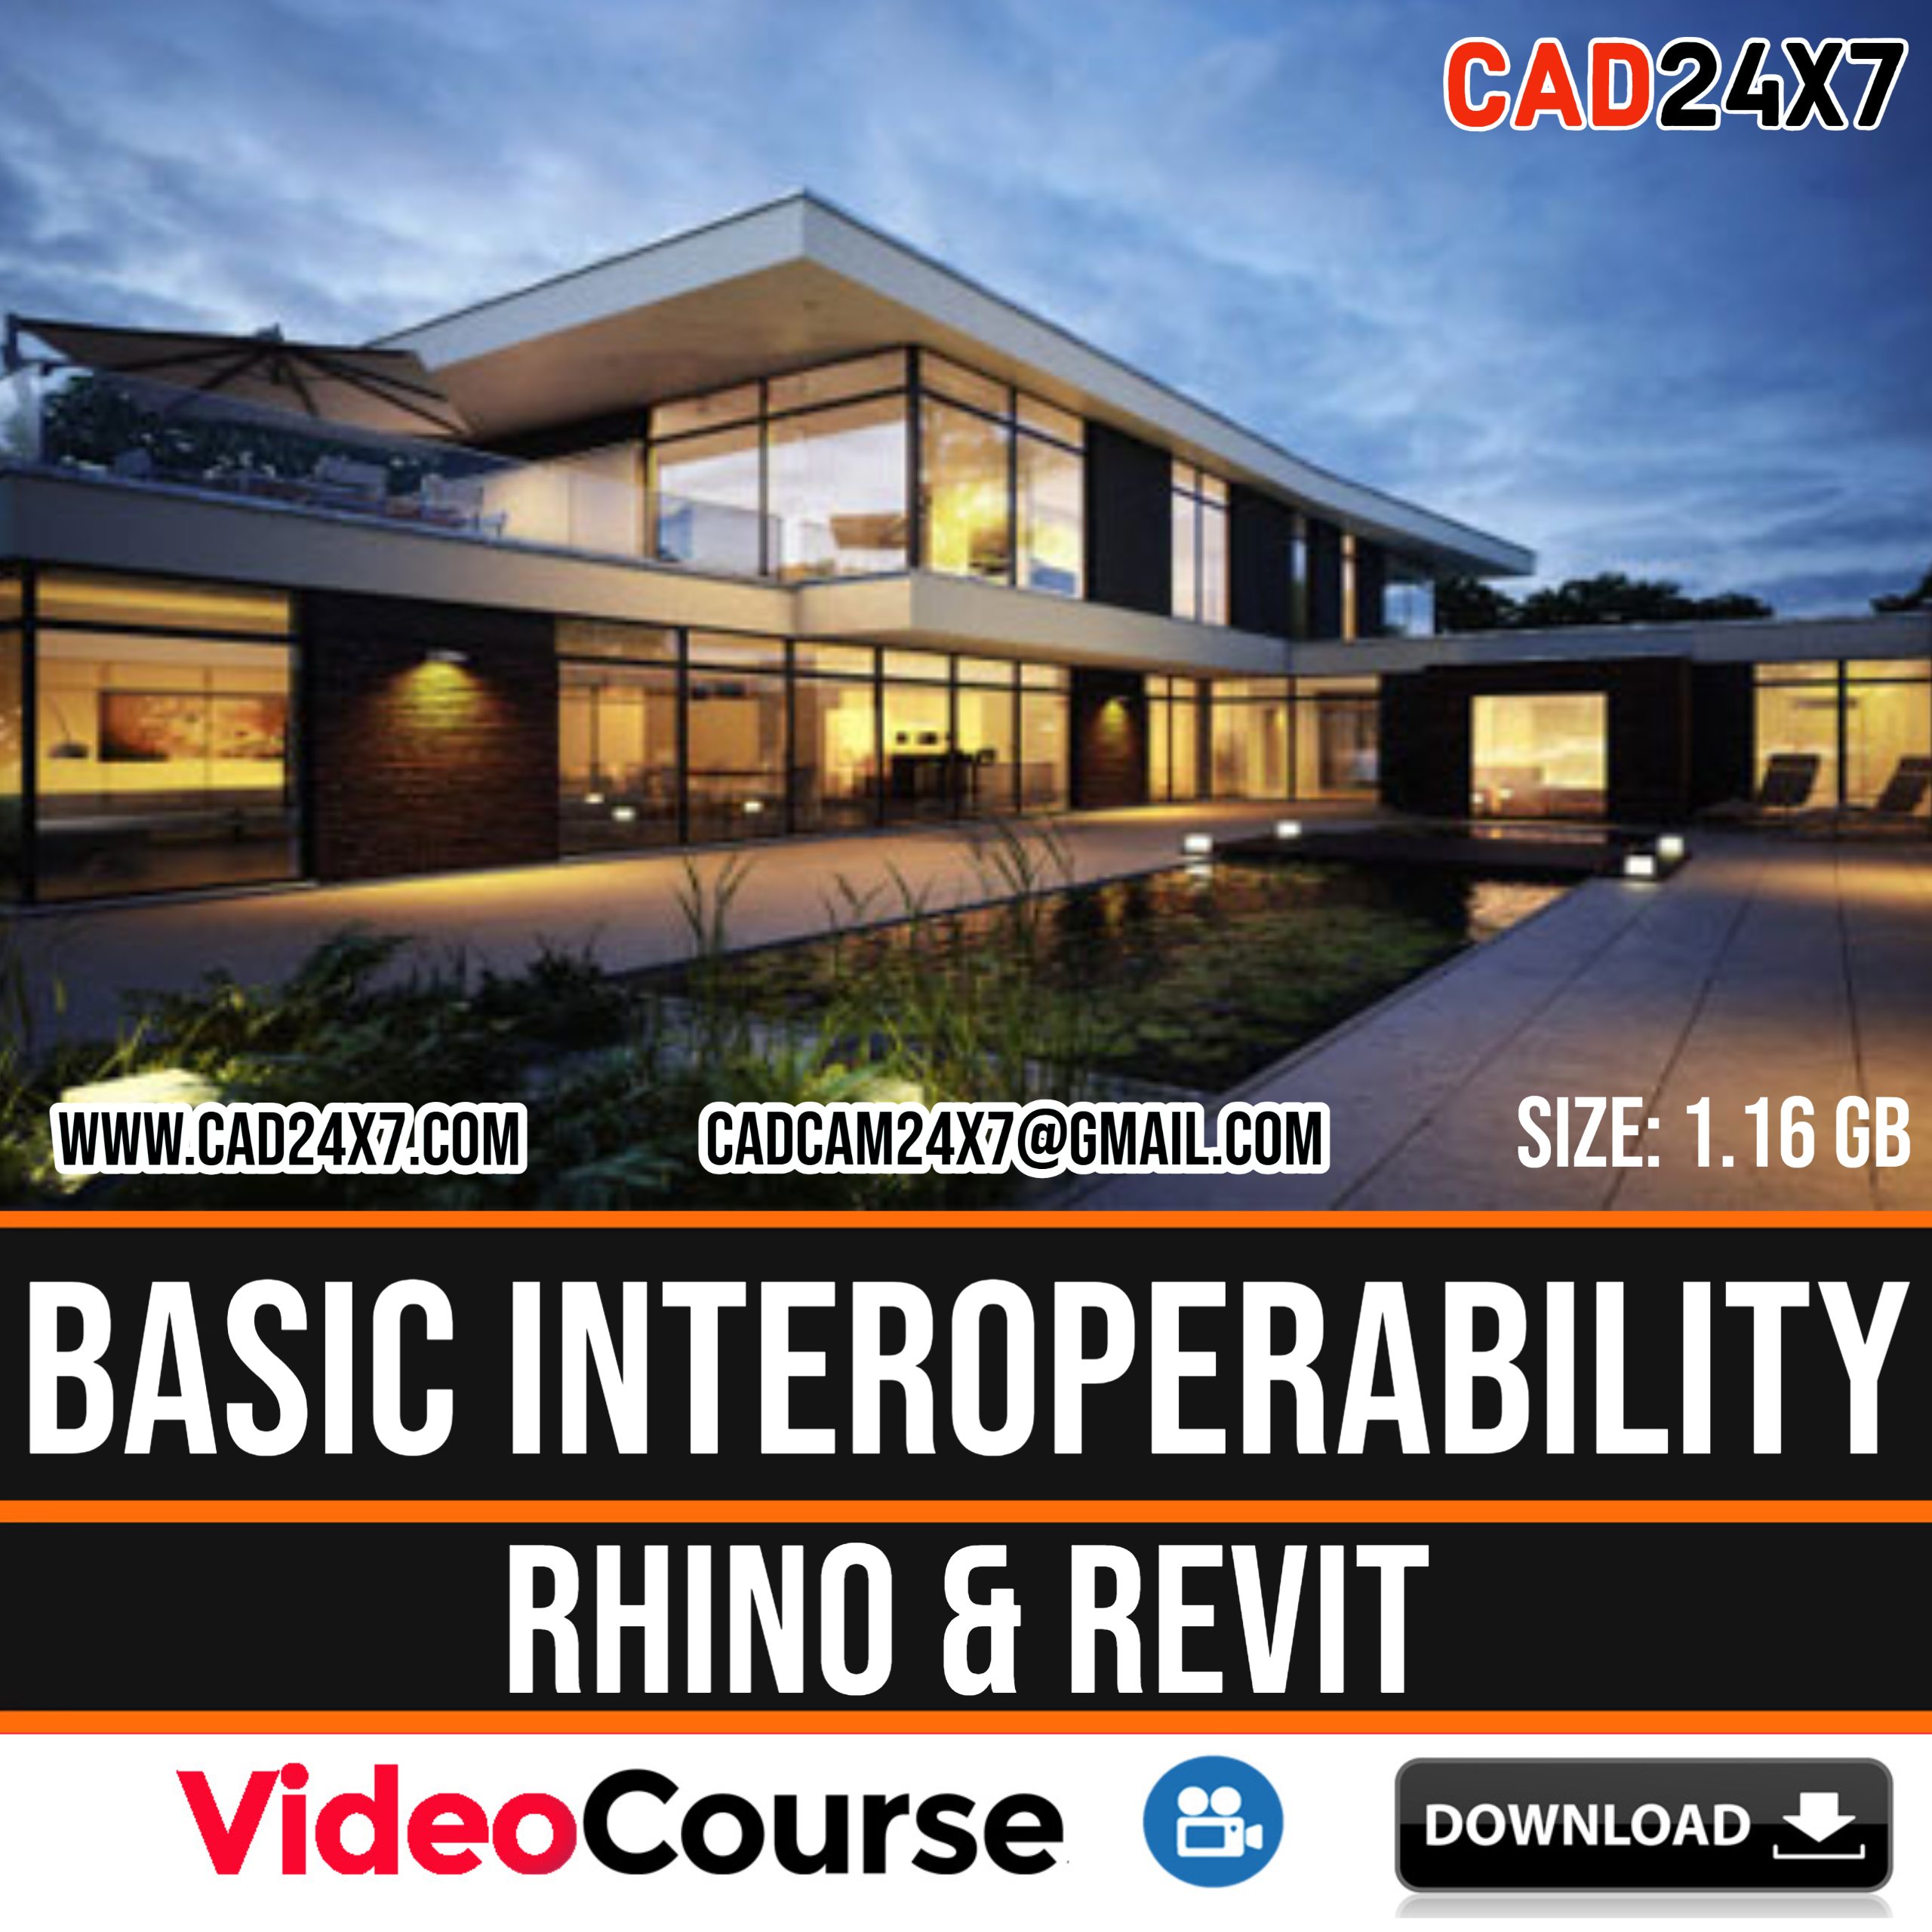 Basic Interoperability Rhino & Revit